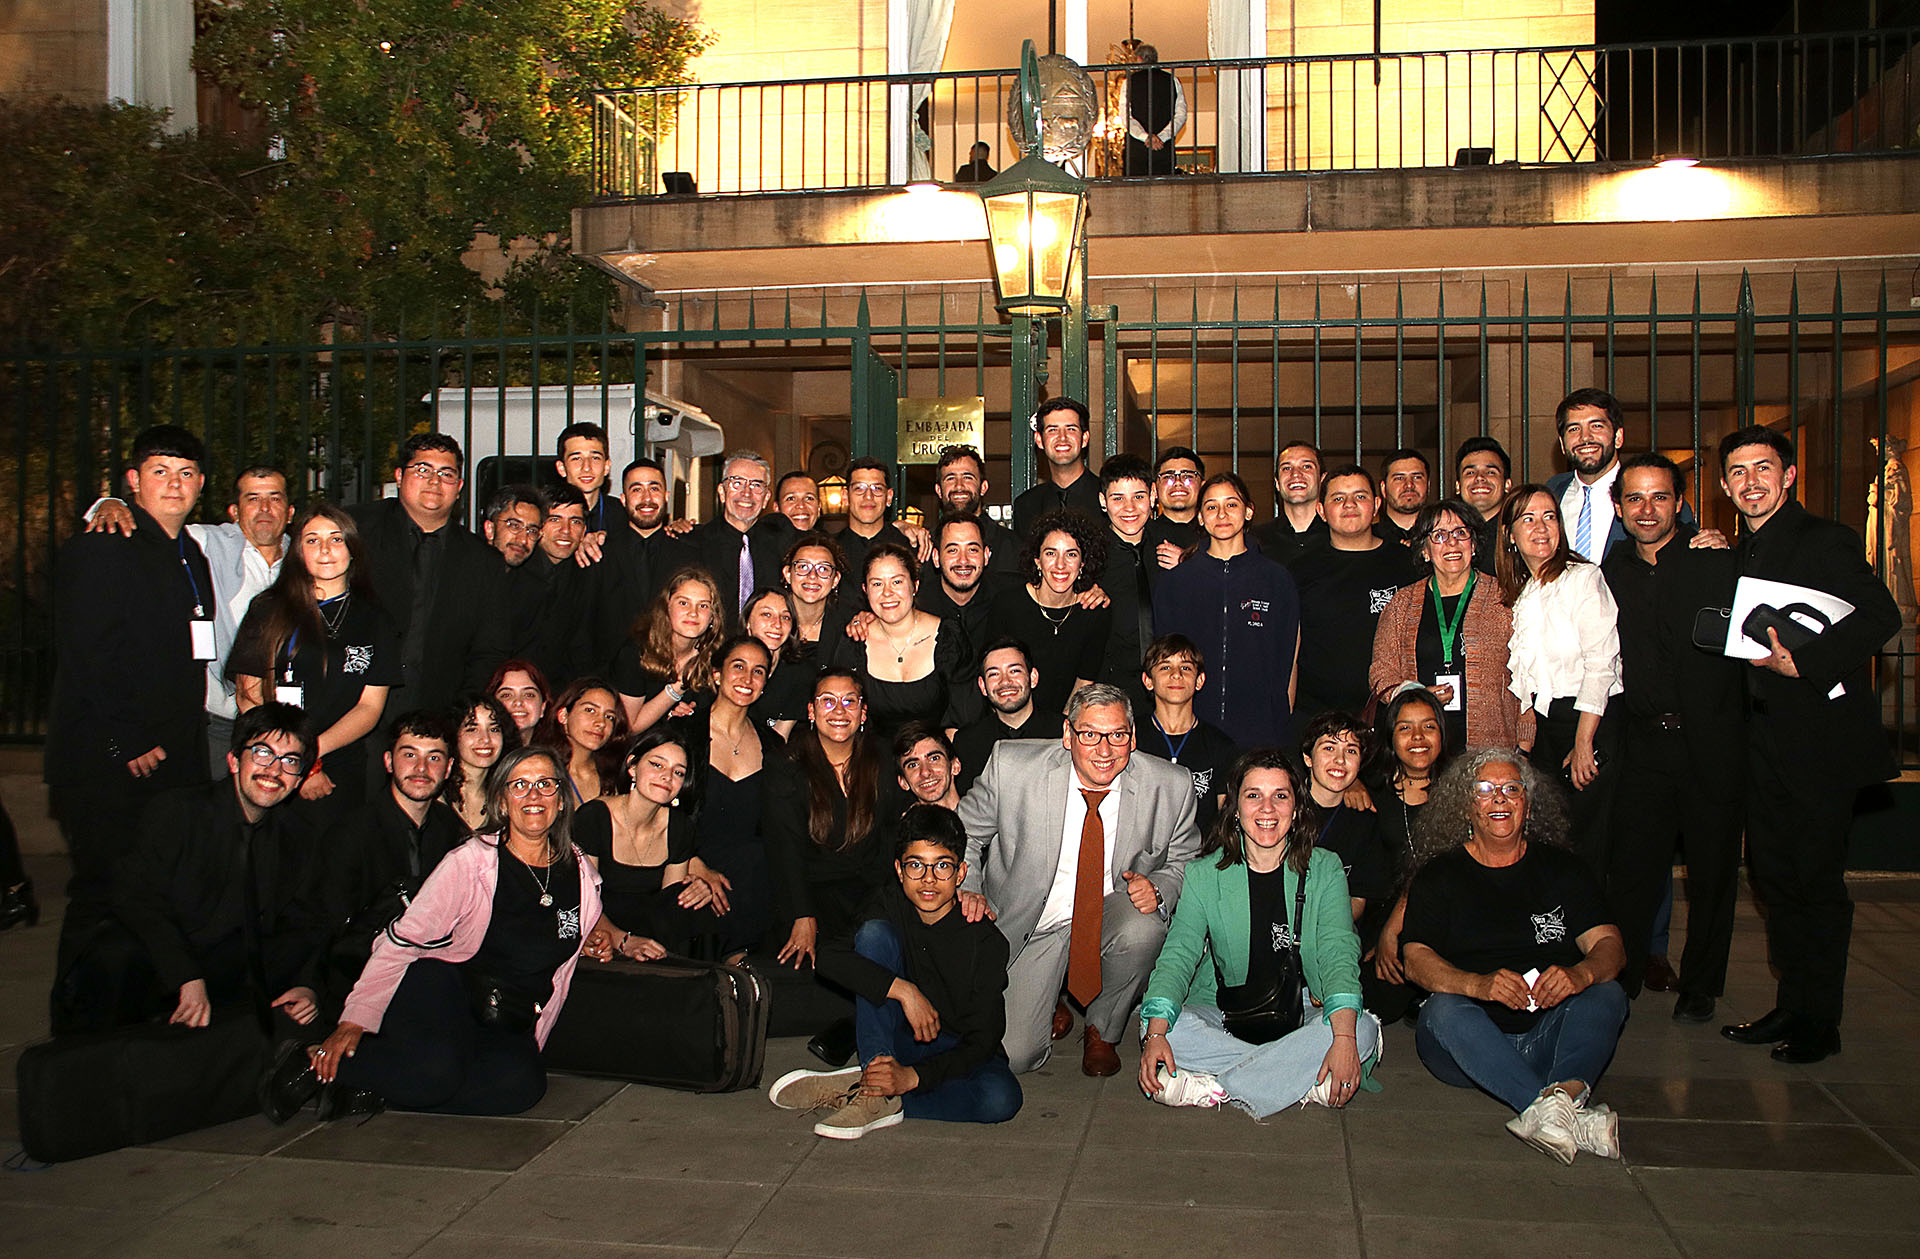 La foto grupal en la Residencia del Embajador, ubicada sobre Avenida Figueroa Alcorta 